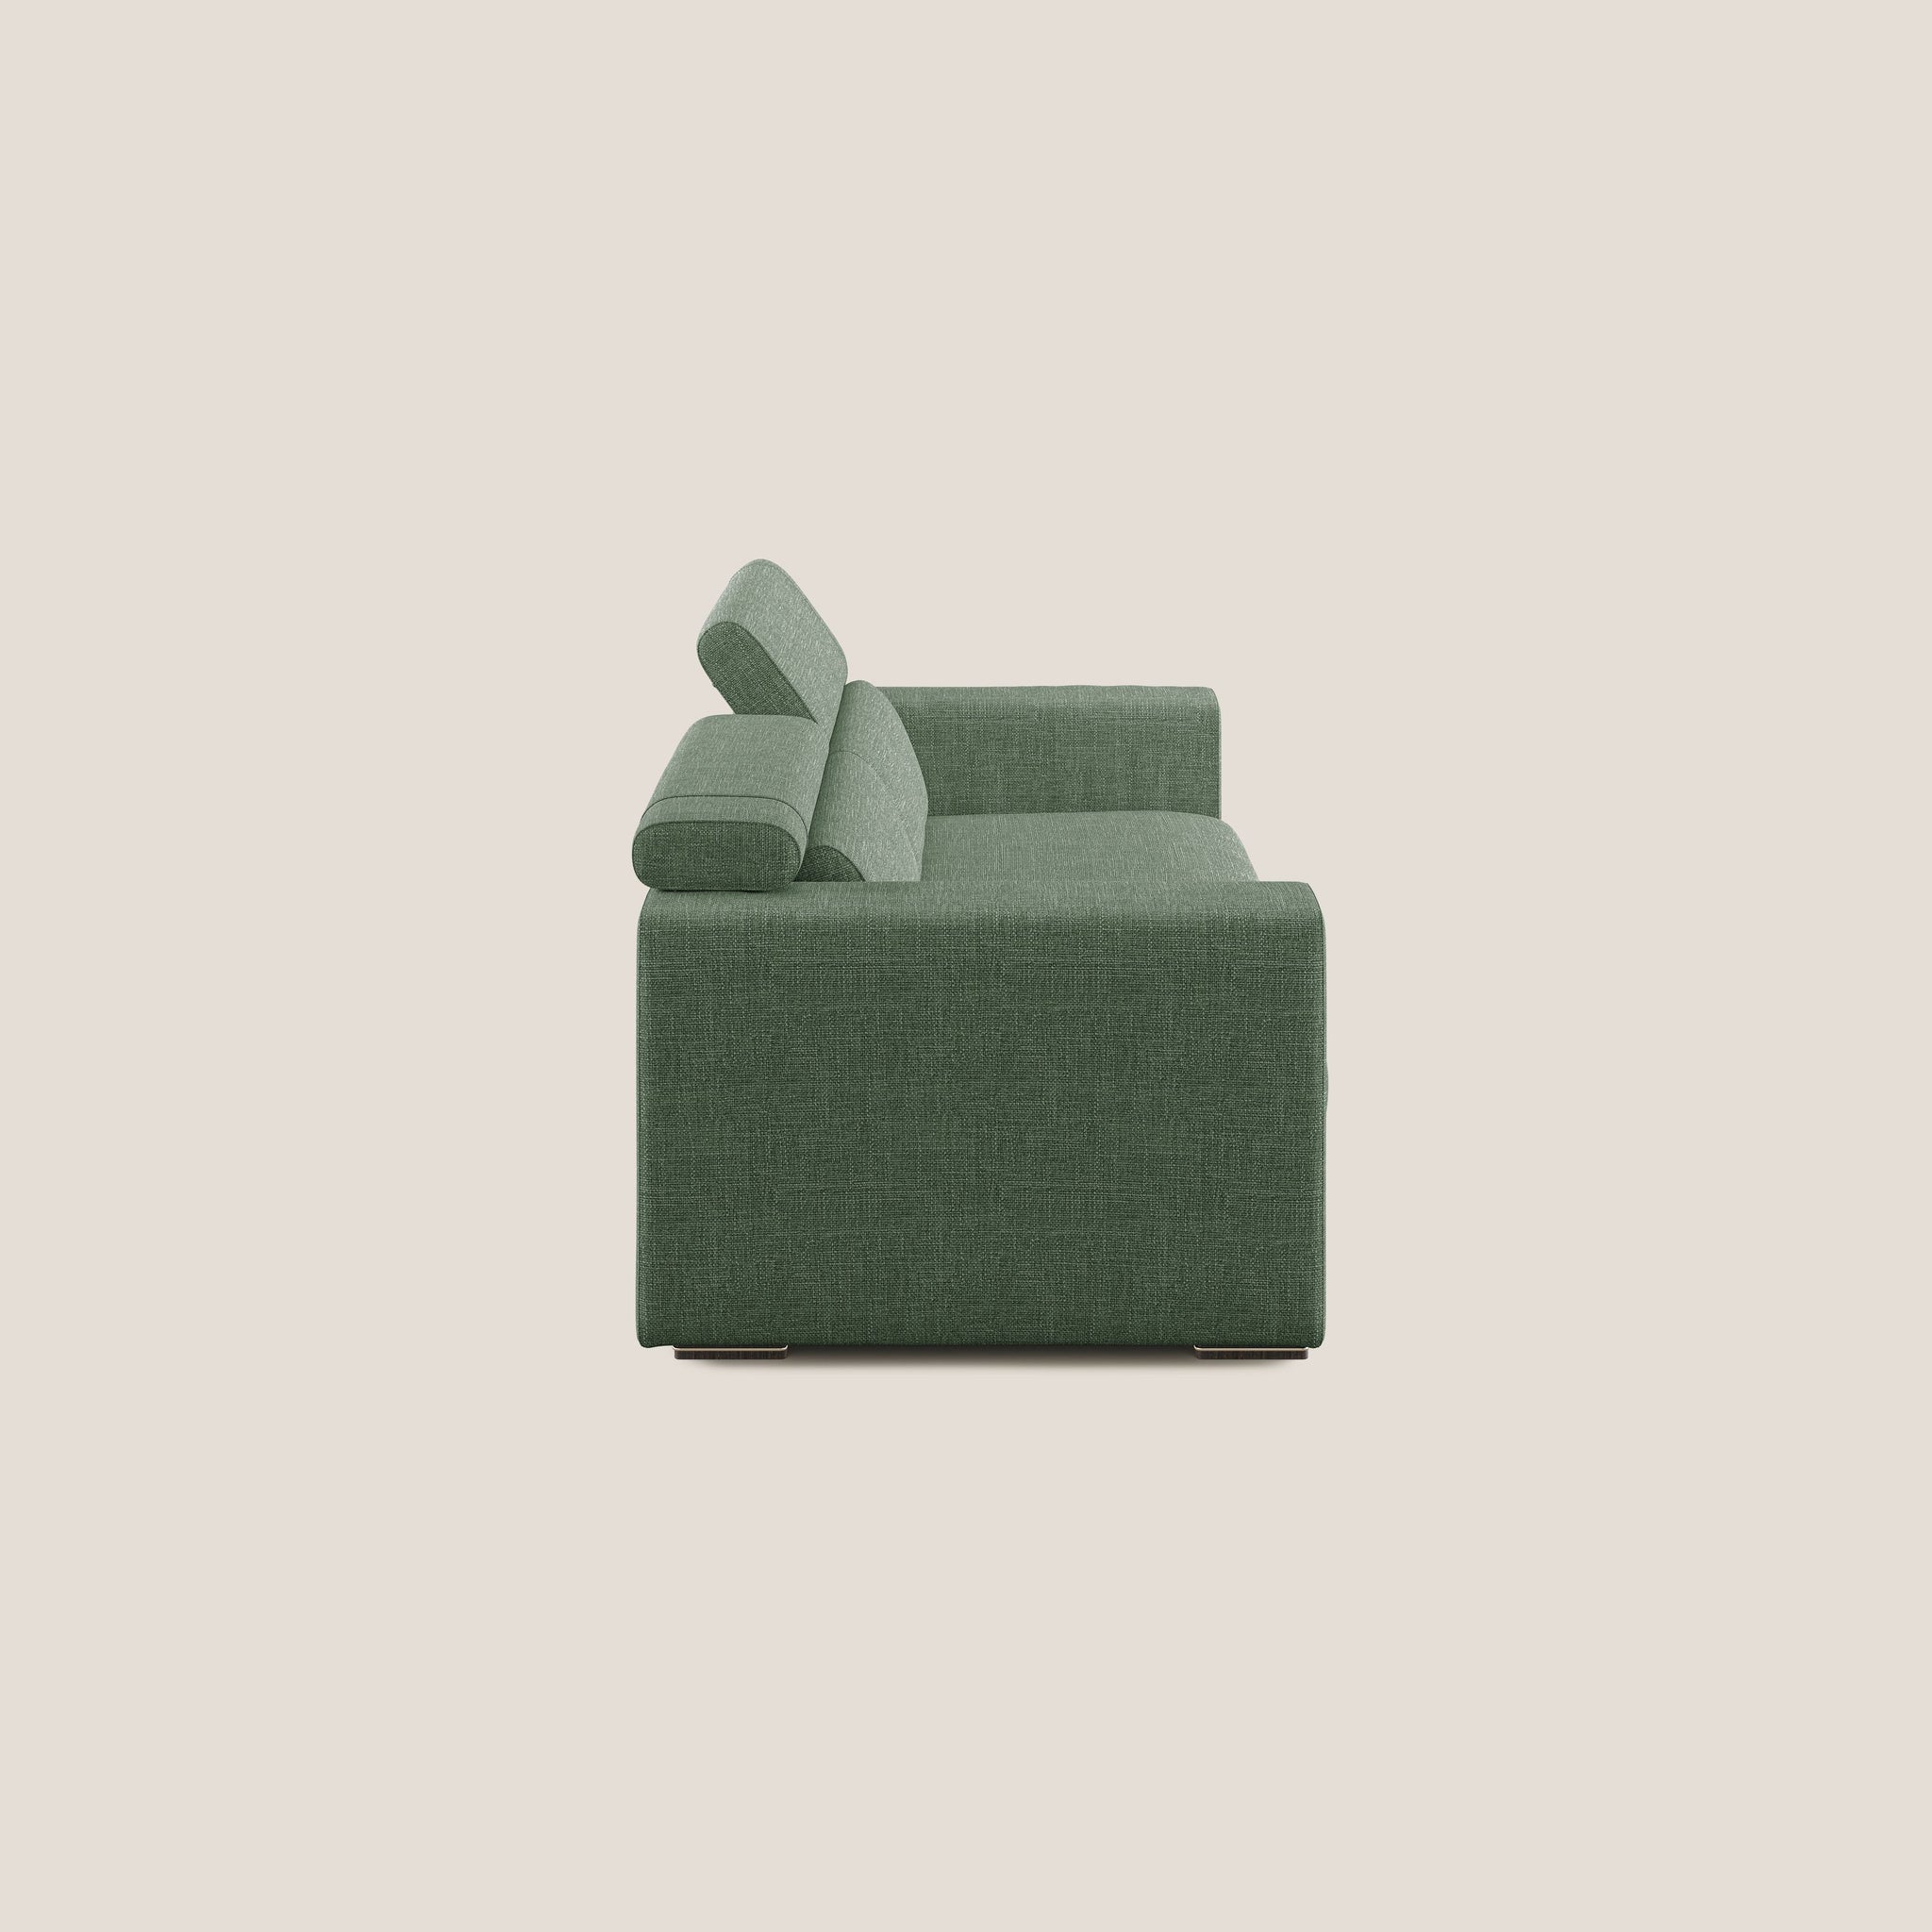 Vegas divano con poggiatesta reclinabili in morbido tessuto impermeabile T06